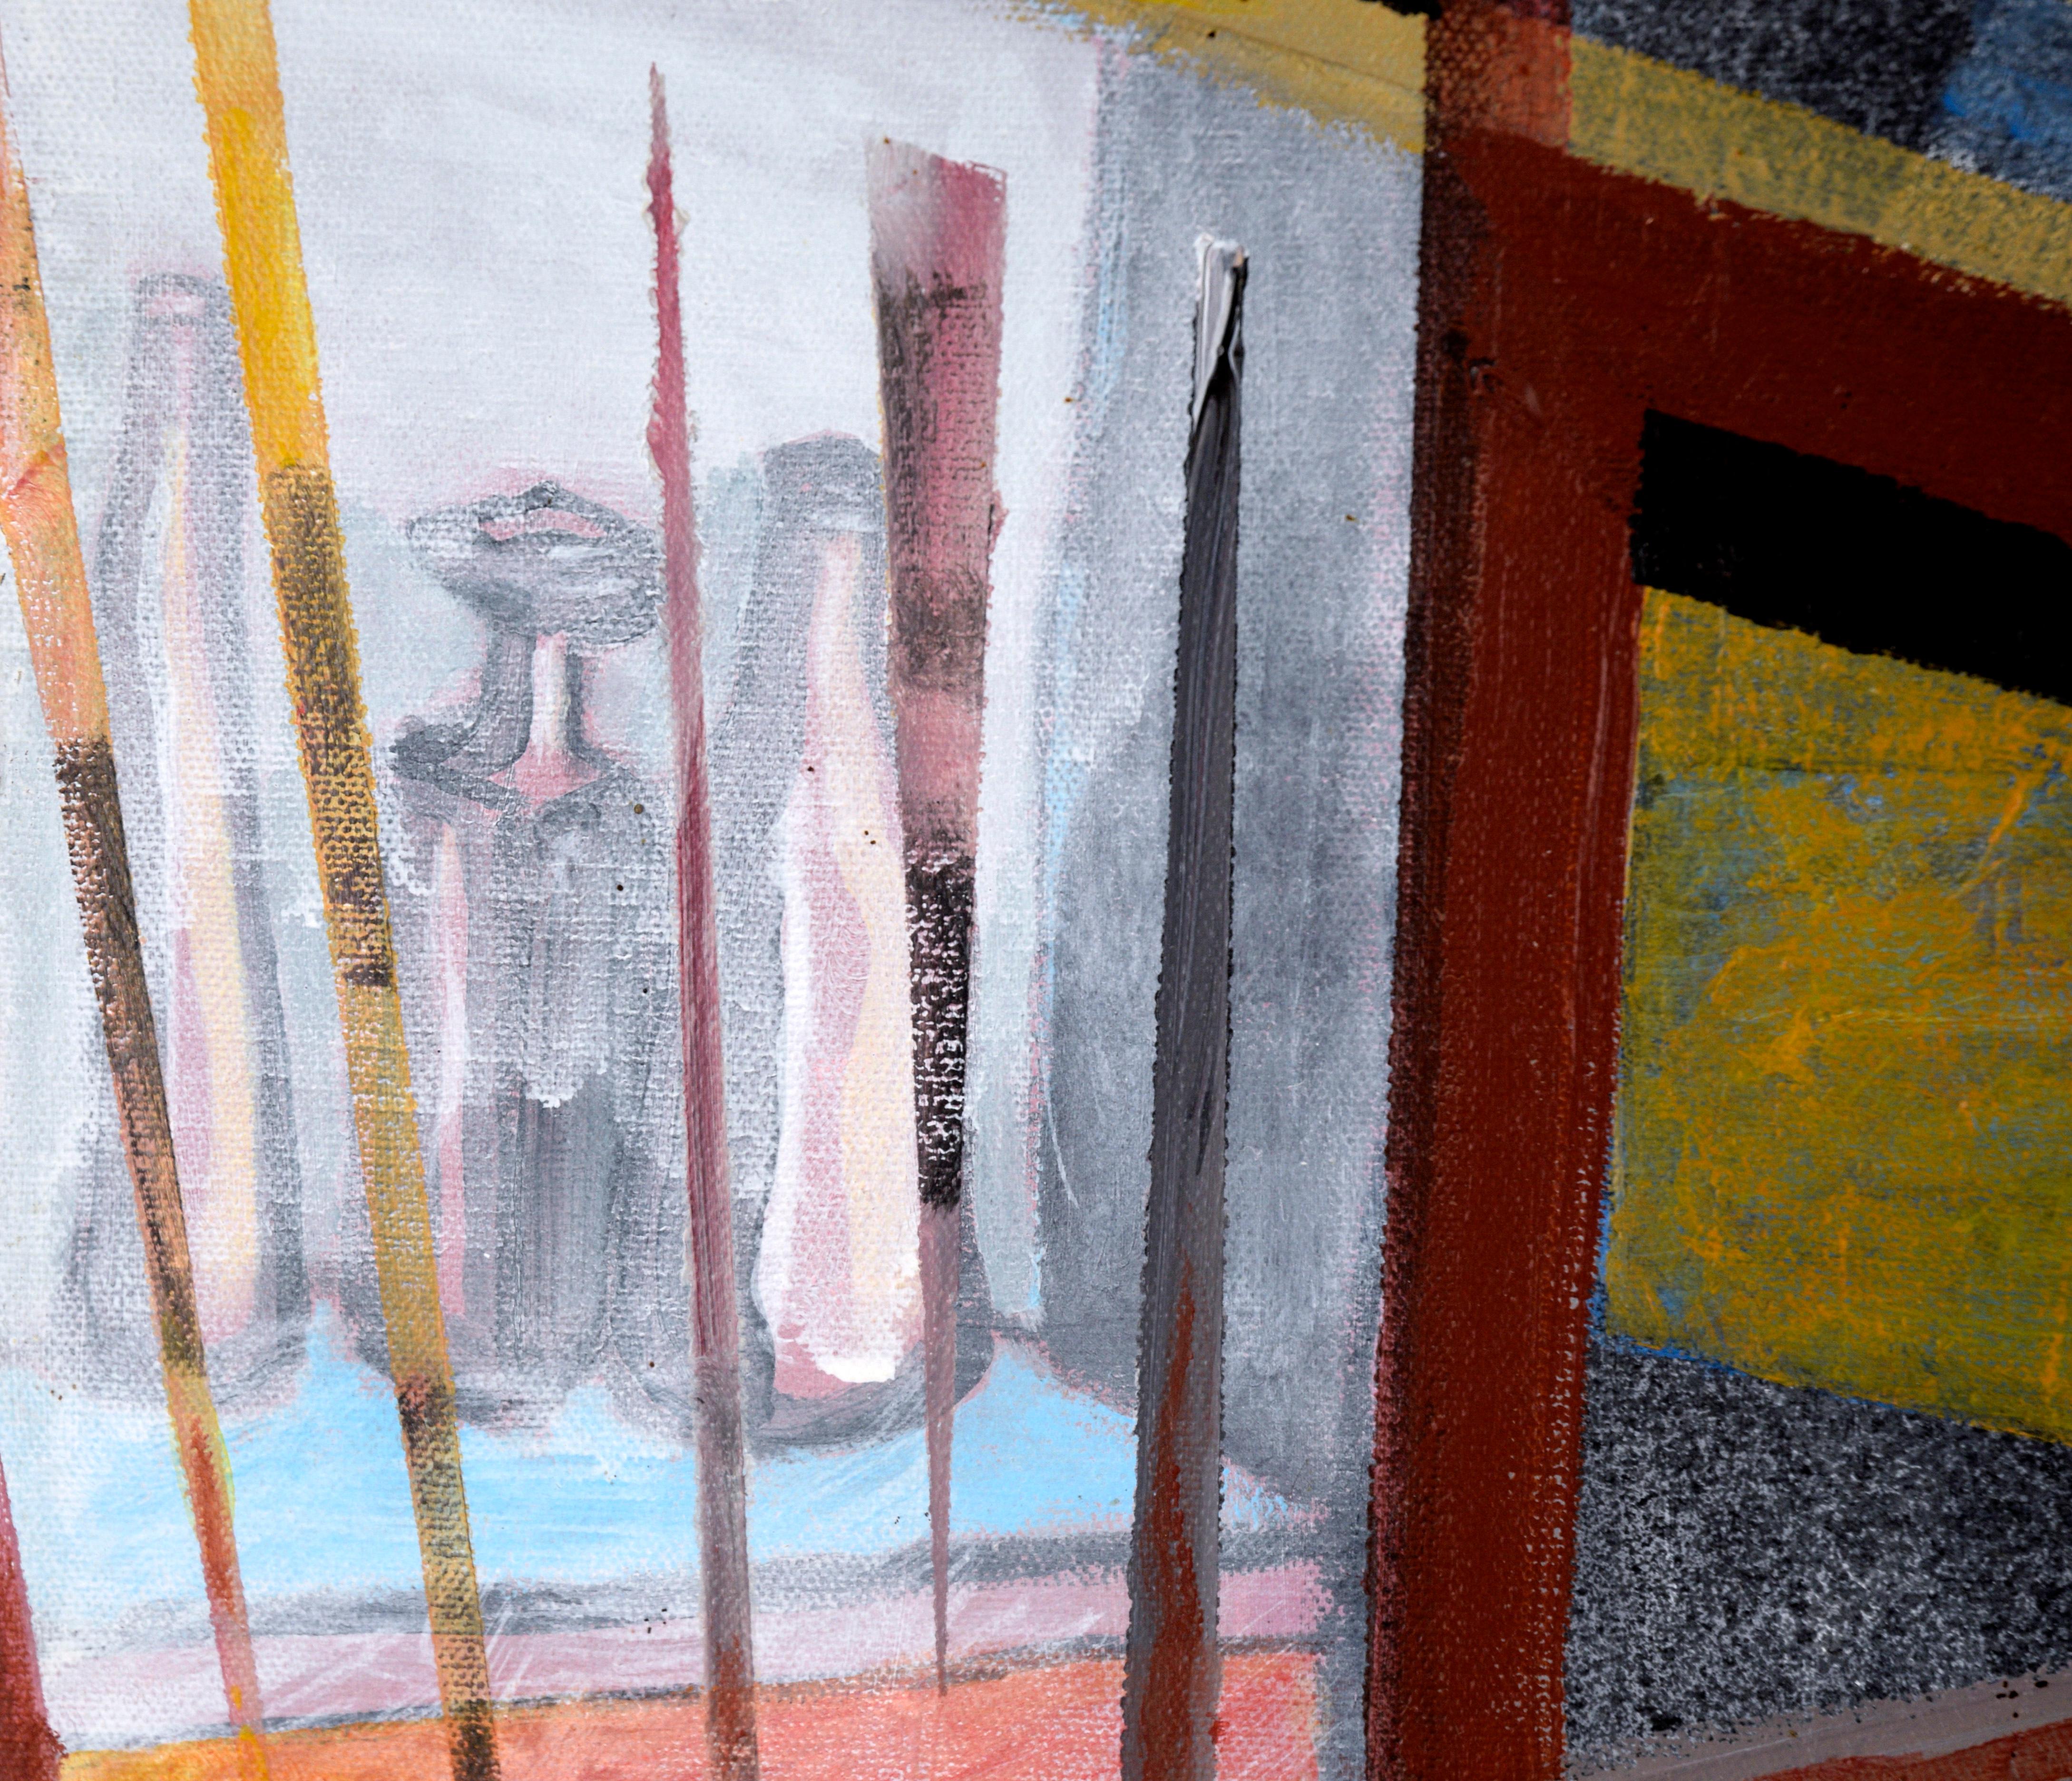 Composition géométrique abstraite avec bouteilles en acrylique sur toile

Abstrait géométrique audacieux d'un artiste inconnu (20e siècle). Les formes rectilignes se superposent, créant une impression d'espace architectural abstrait. La pièce est